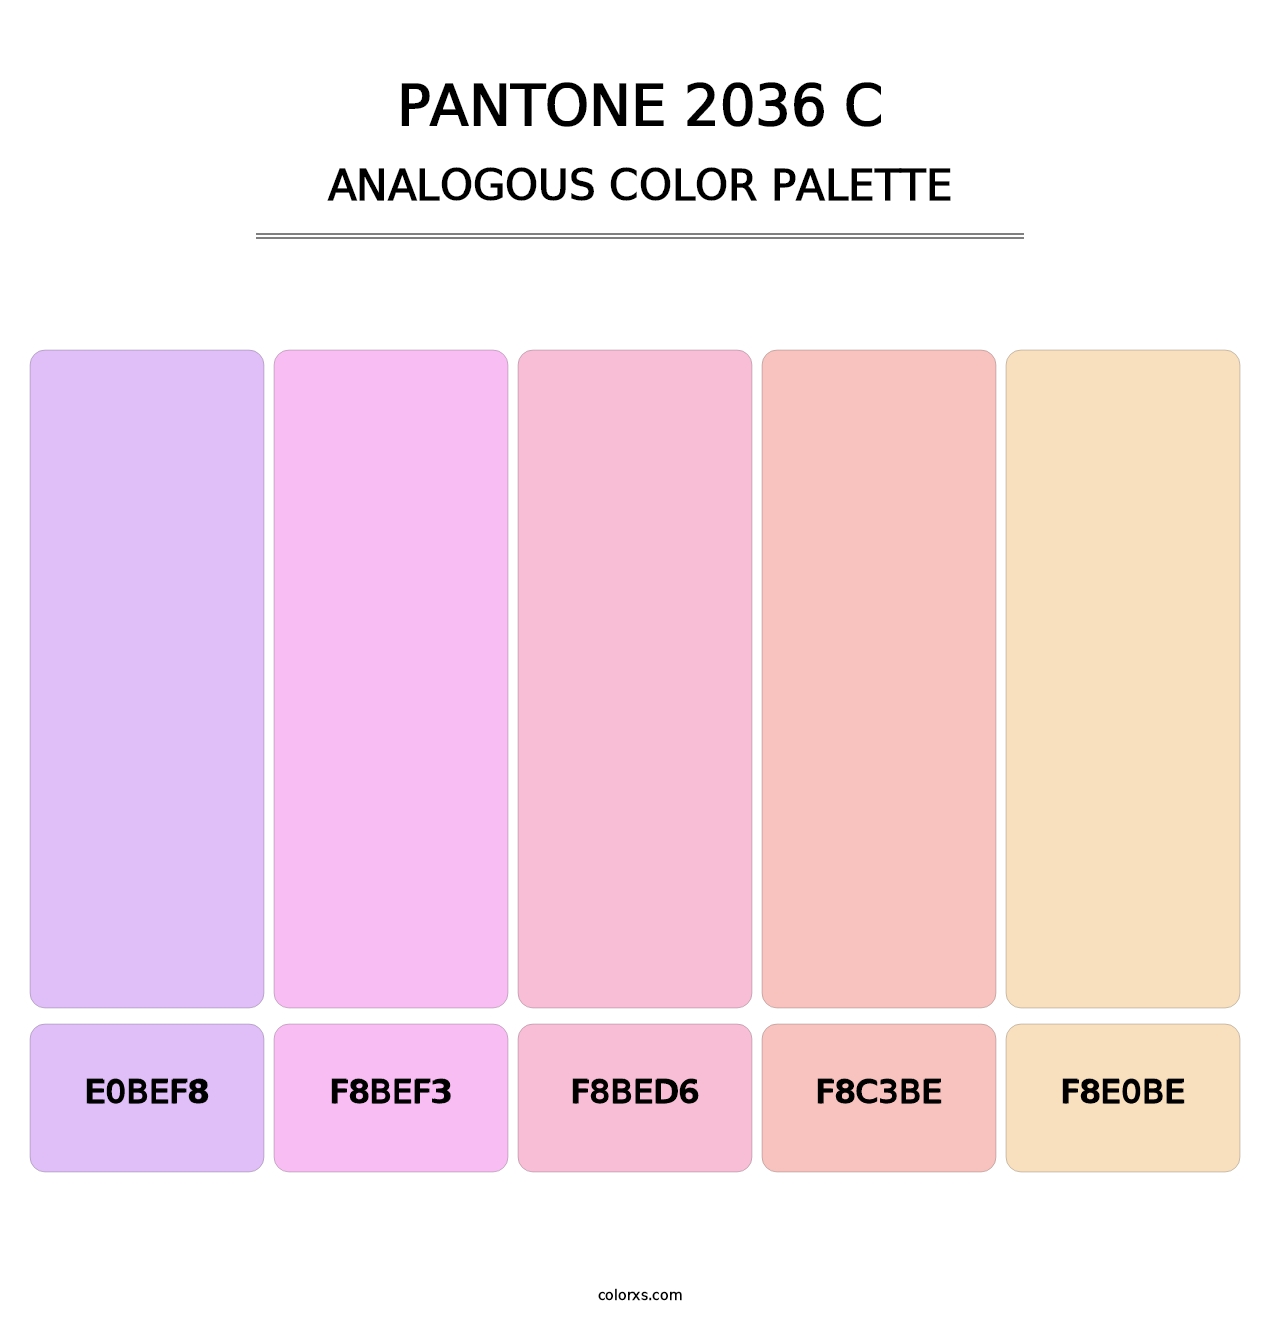 PANTONE 2036 C - Analogous Color Palette